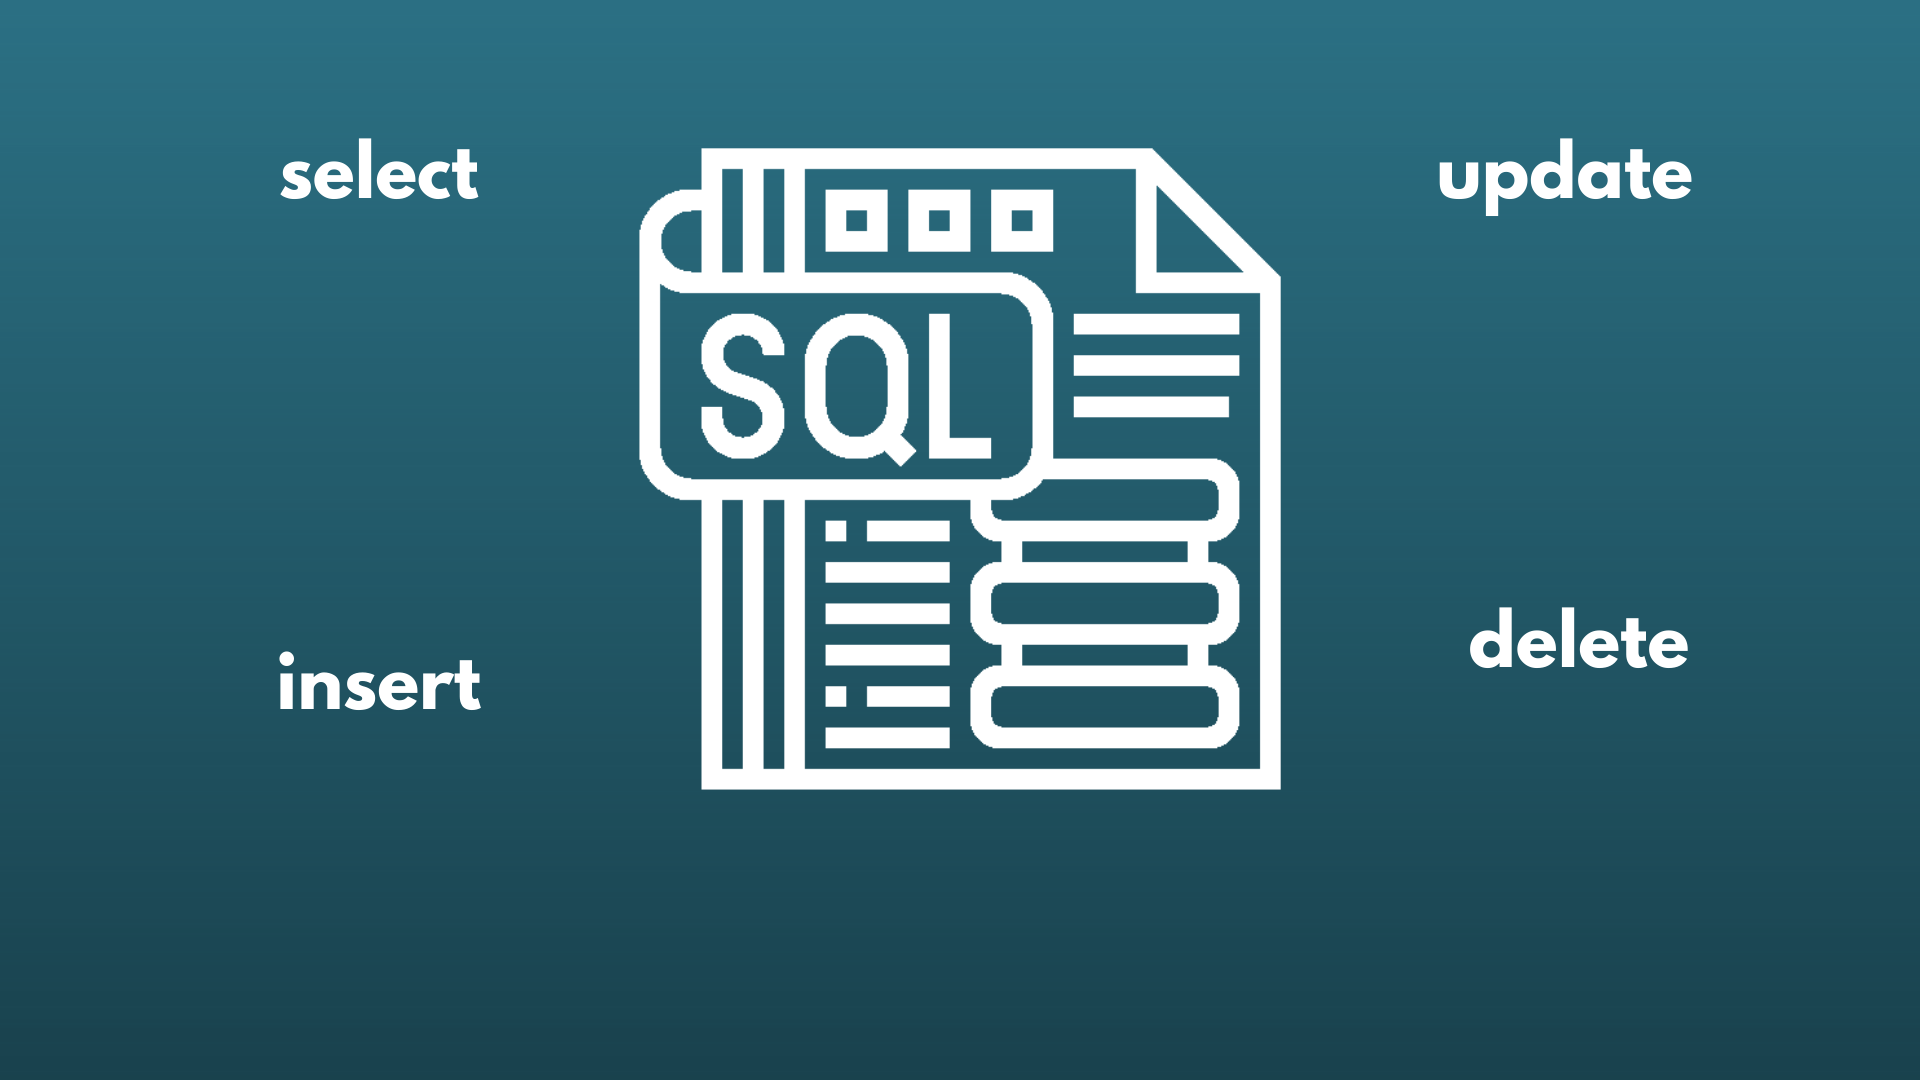 Imagem com fundo azul escuro, com um ícone do SQL e as palavras insert, select, update e delete destacado em branco